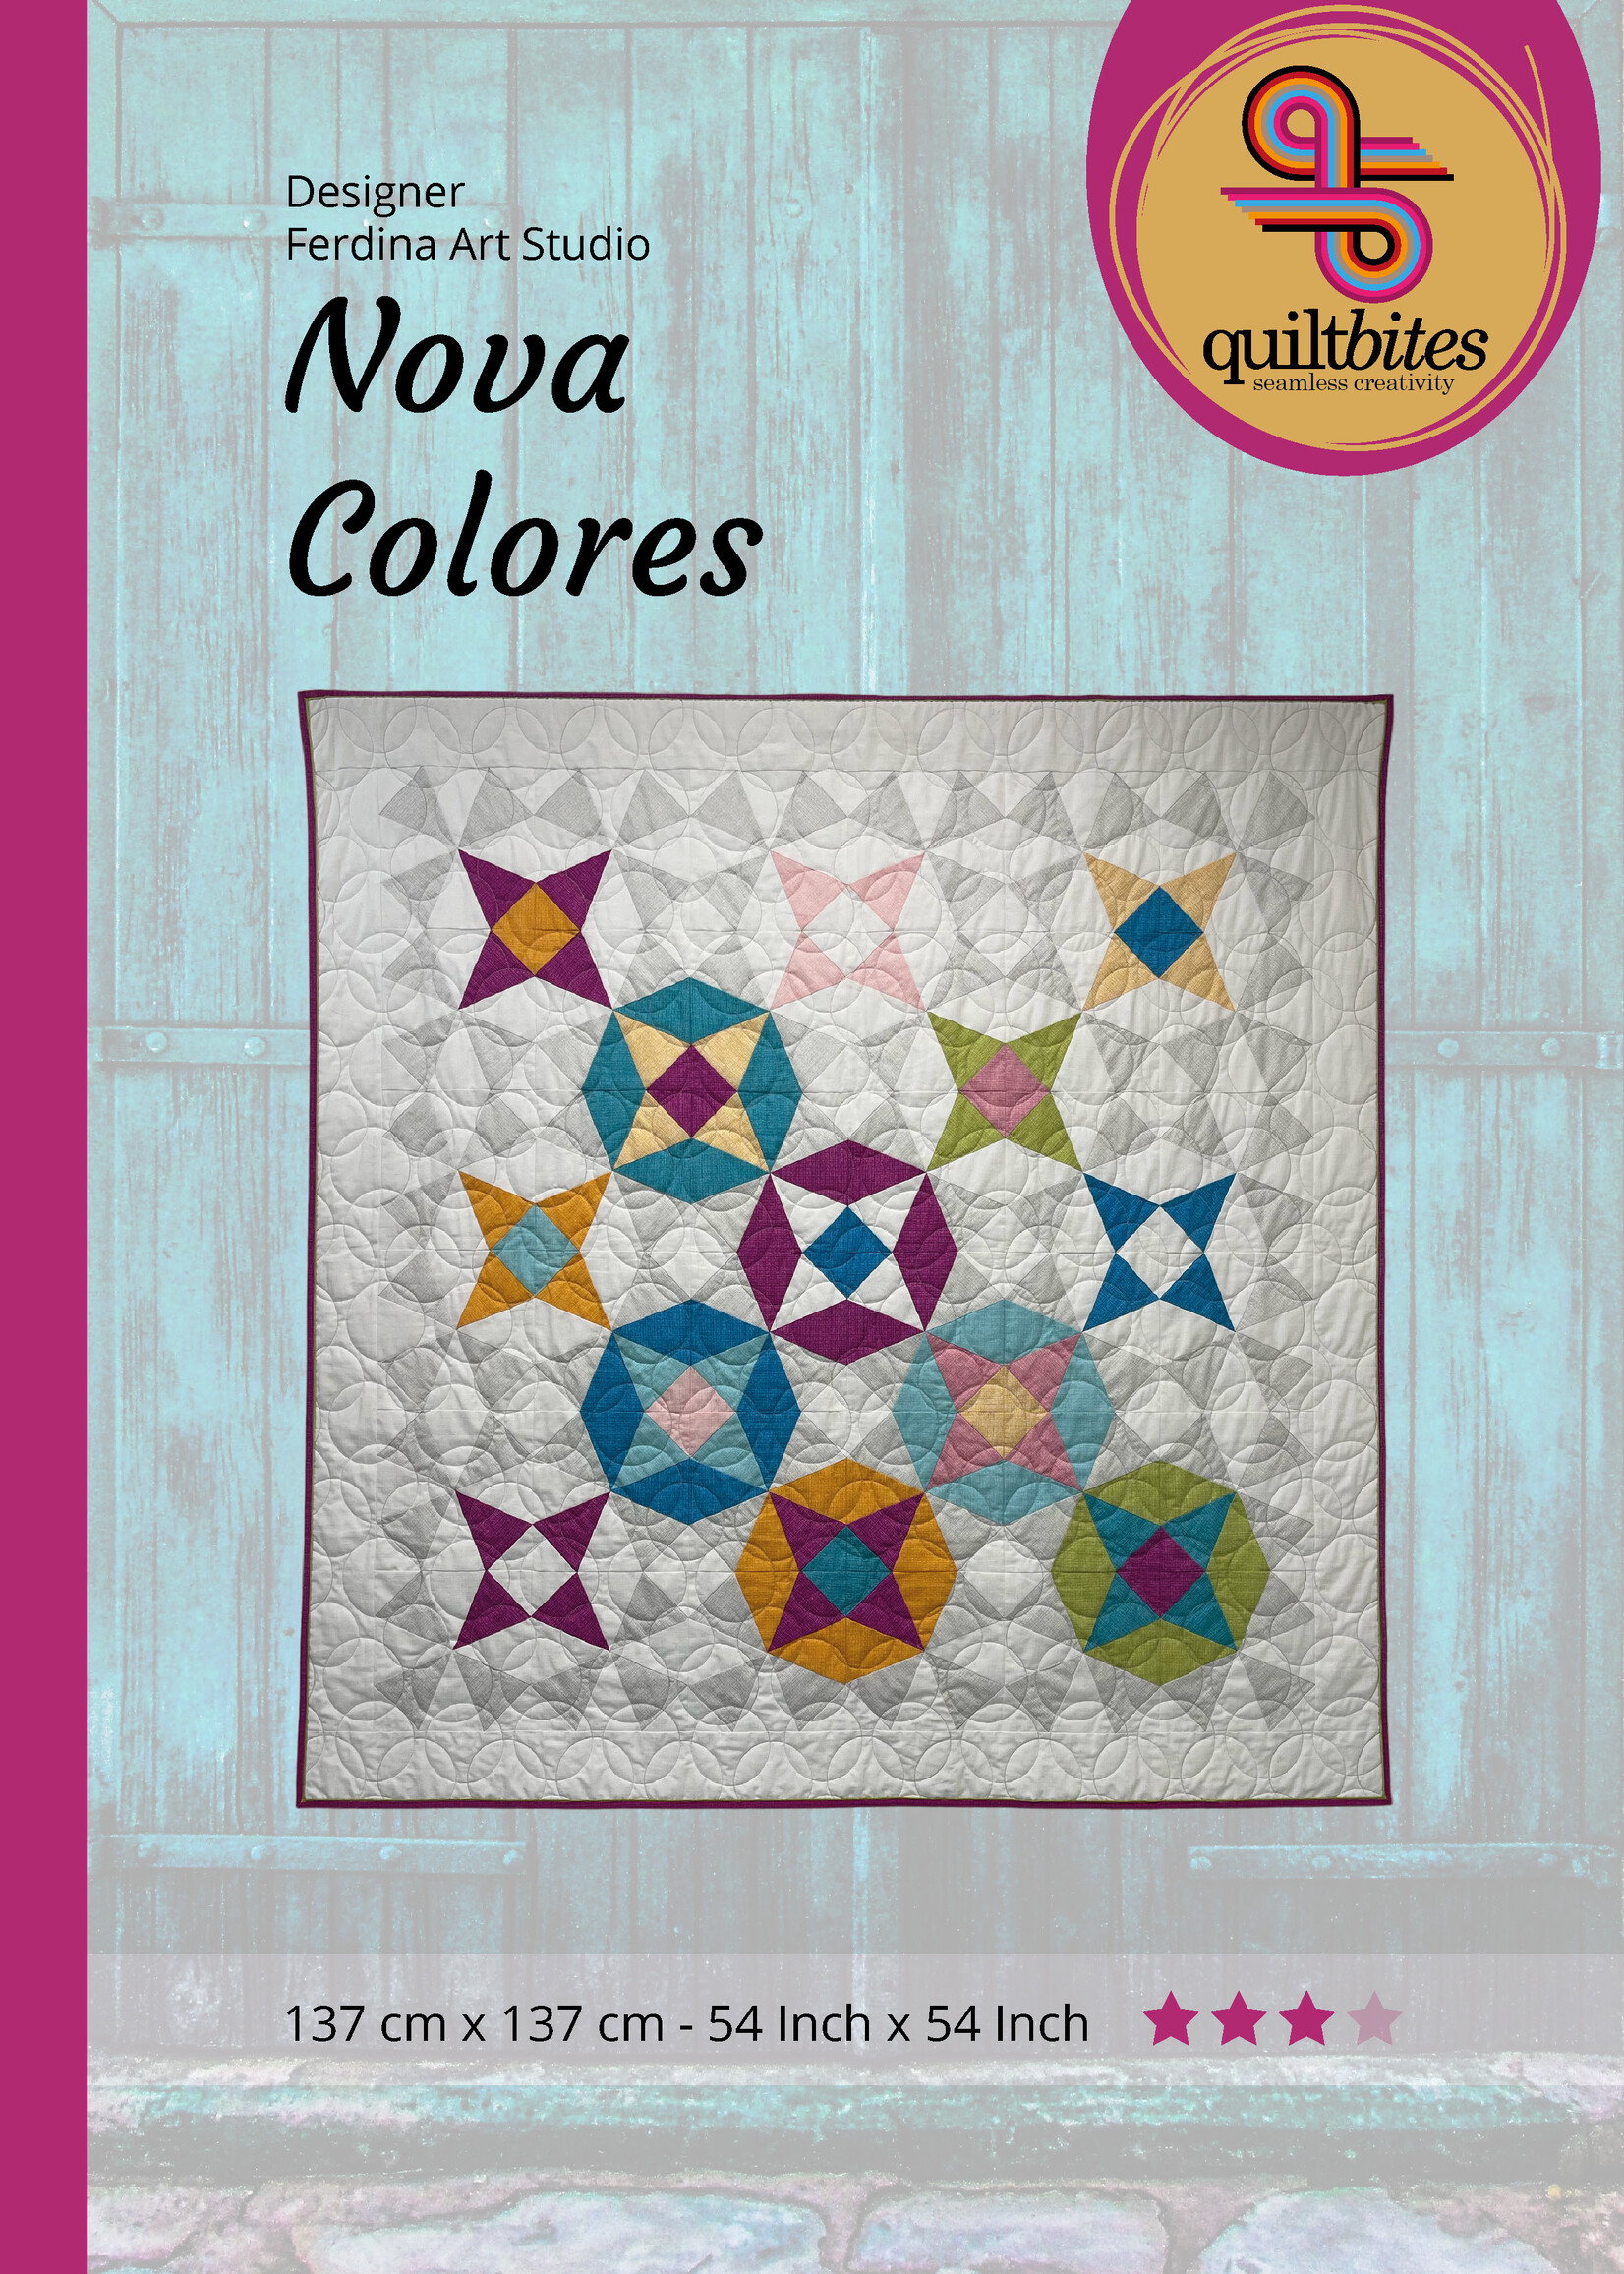 QuiltBites Nova Colores pattern